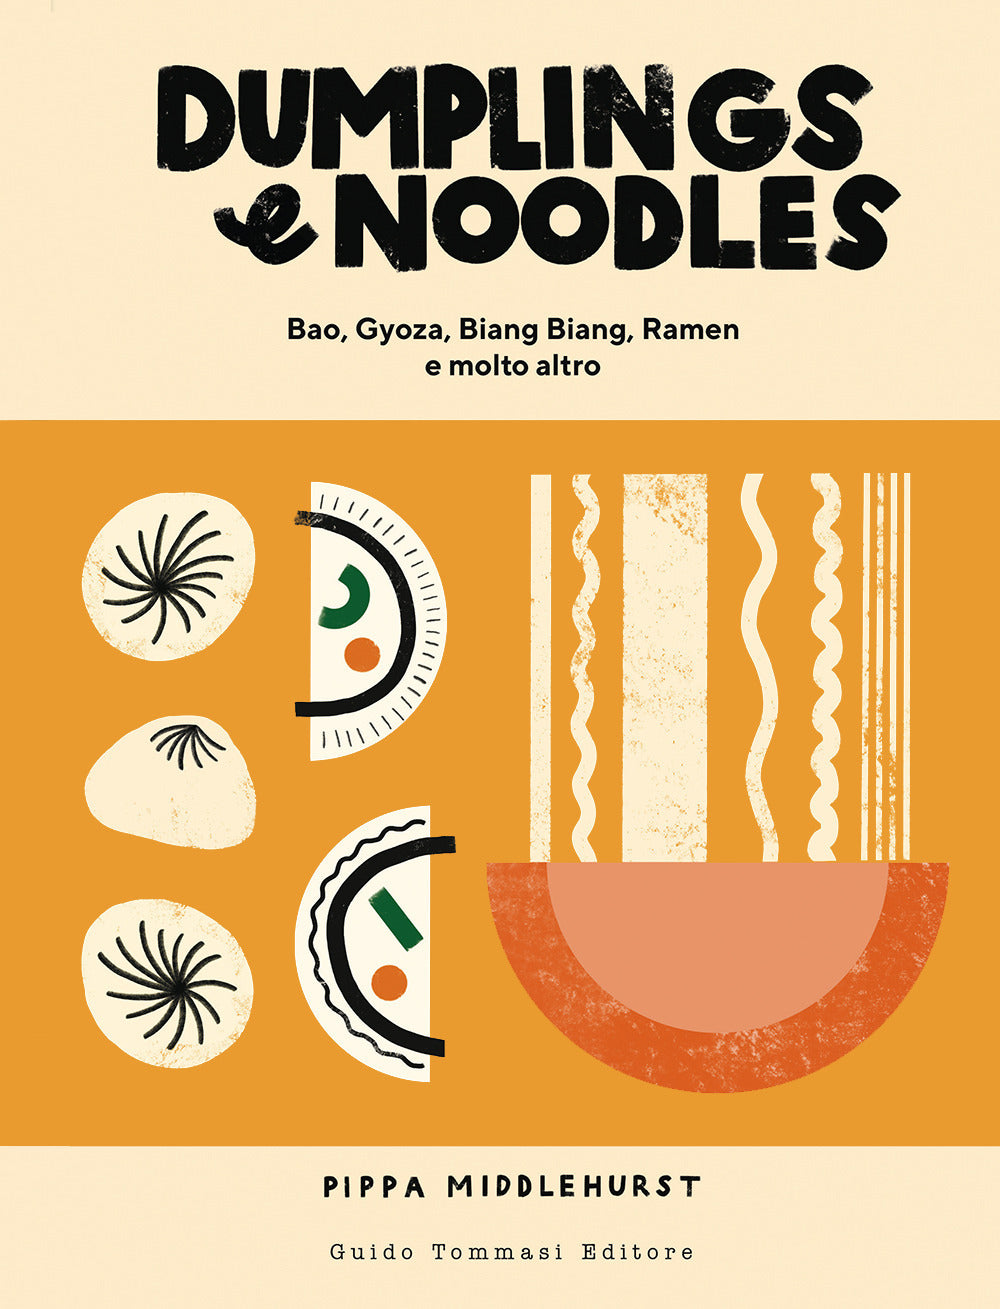 Dumplings & noodles. Bao, Gyoza, Biang Biang, Ramen e molto altro.